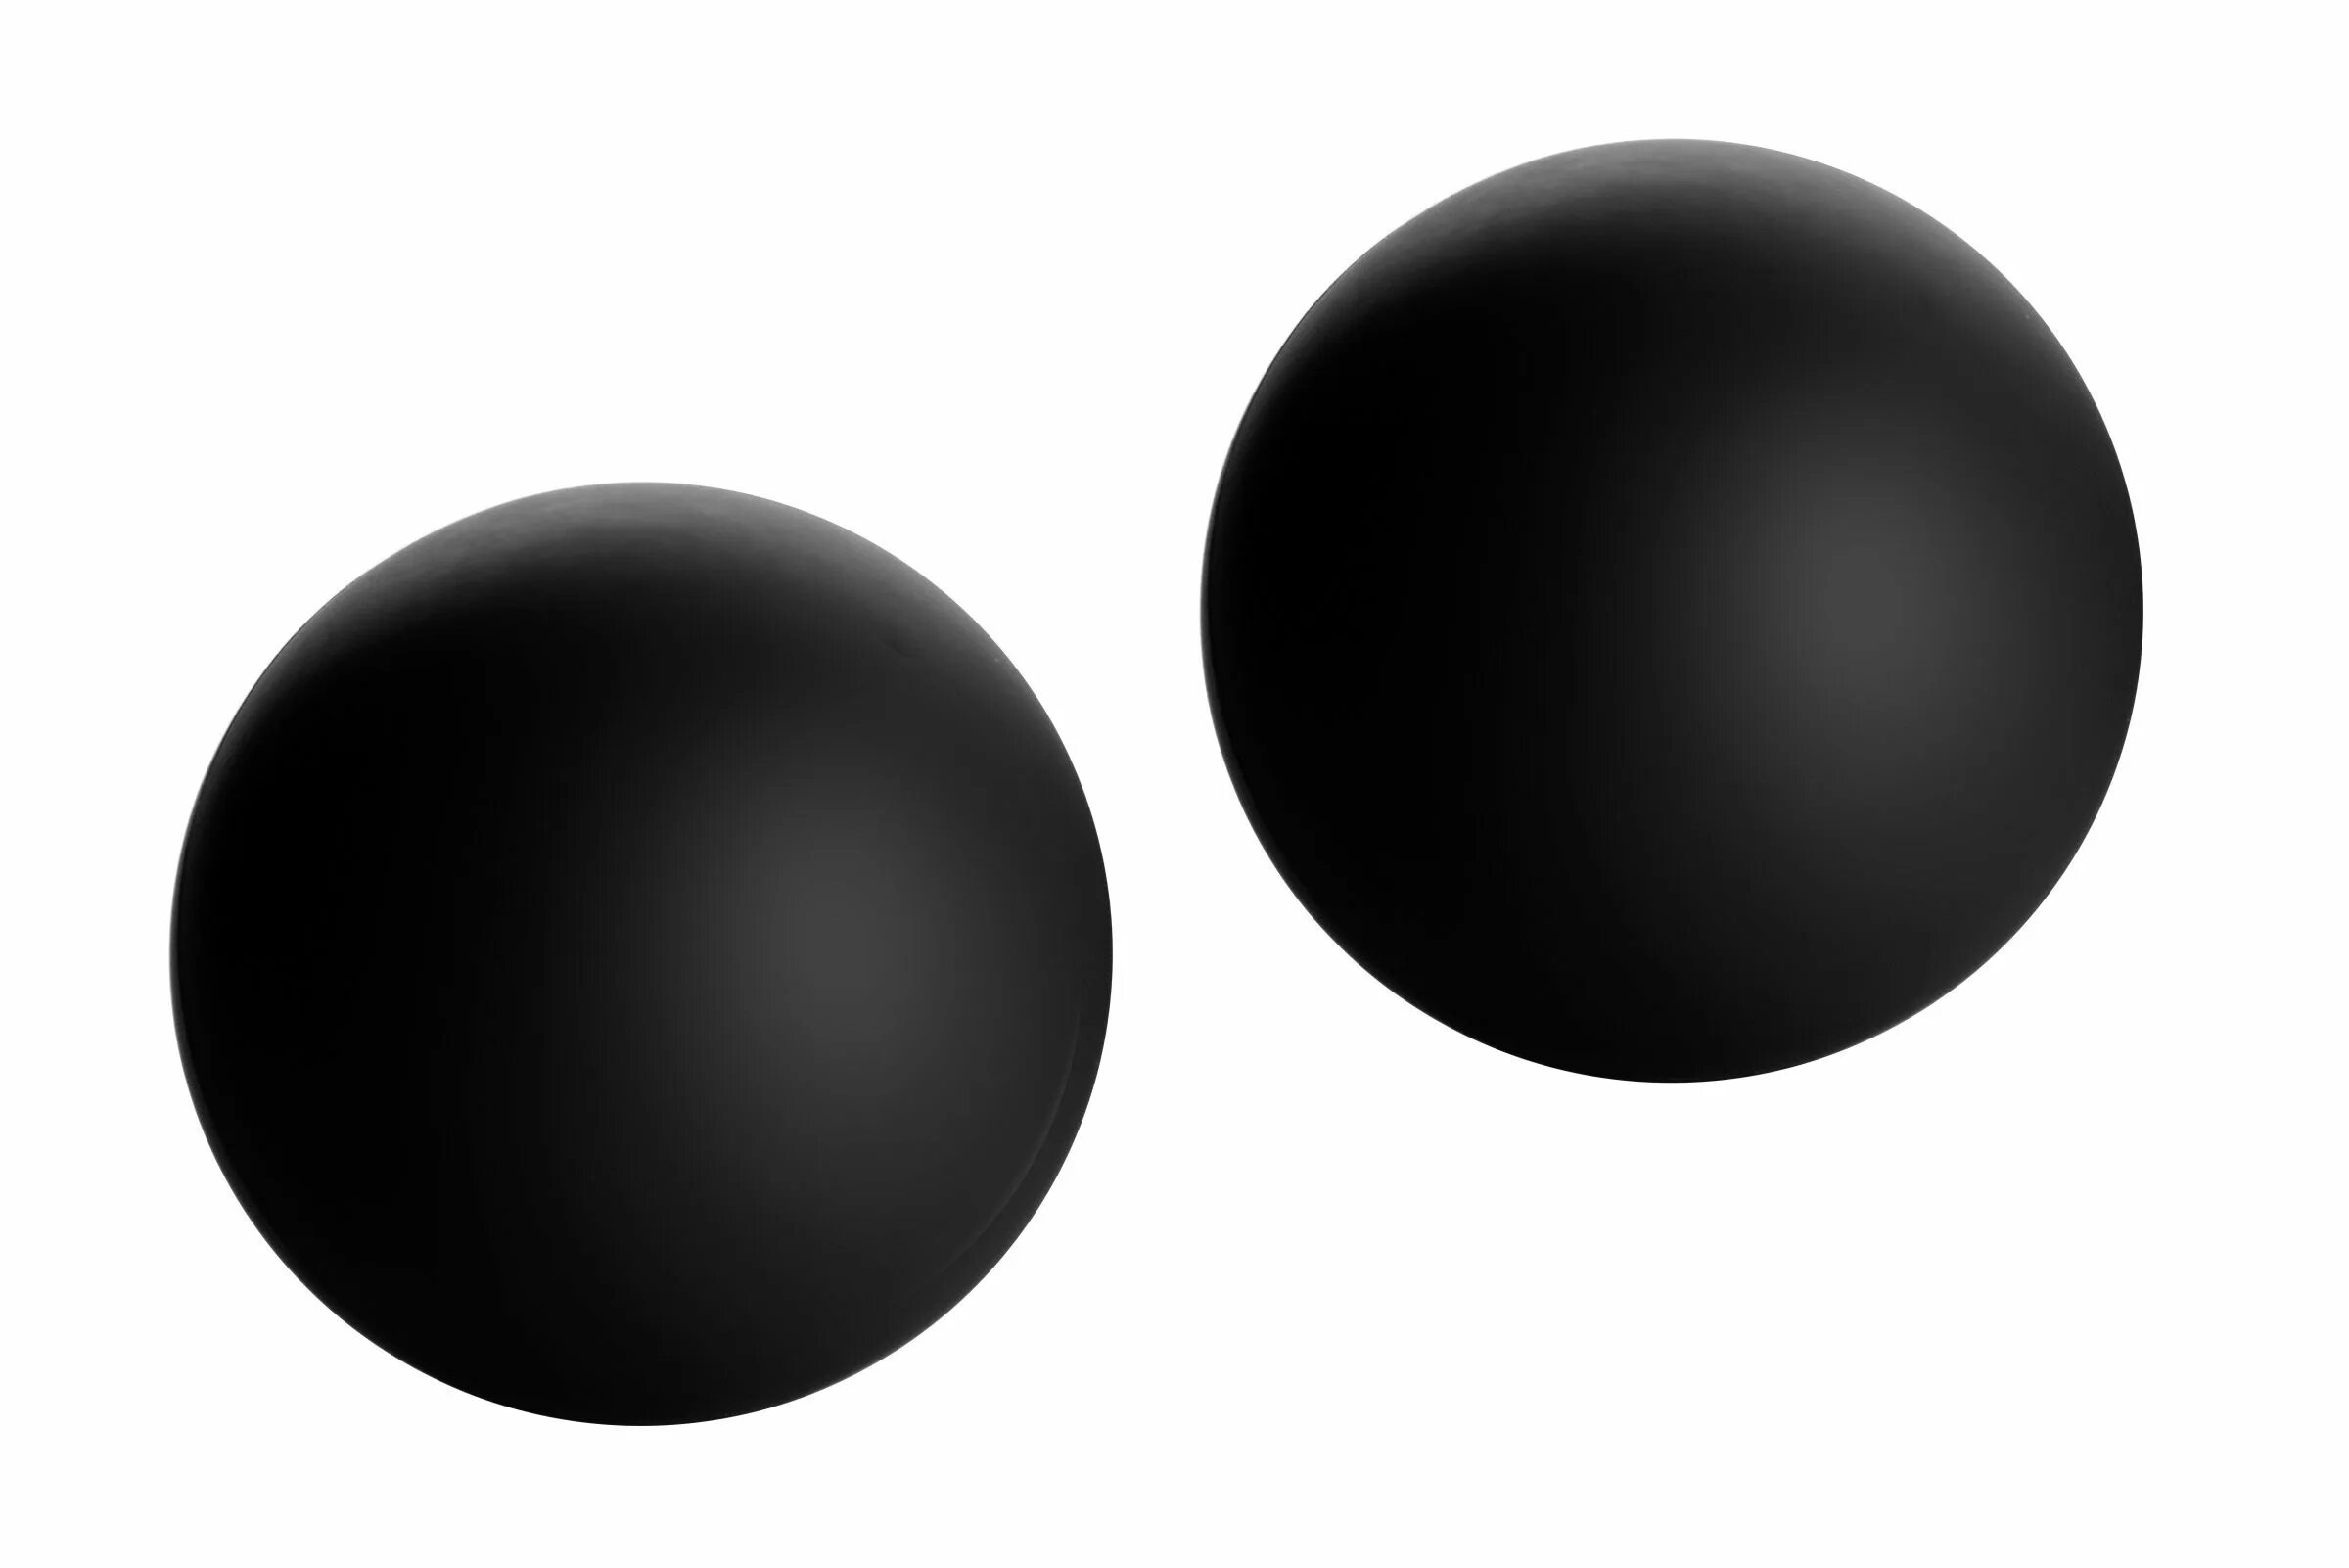 Ball part. Блэк Баллс. Черный шарик. Черный шар для фотошопа. Шар черный круглый.